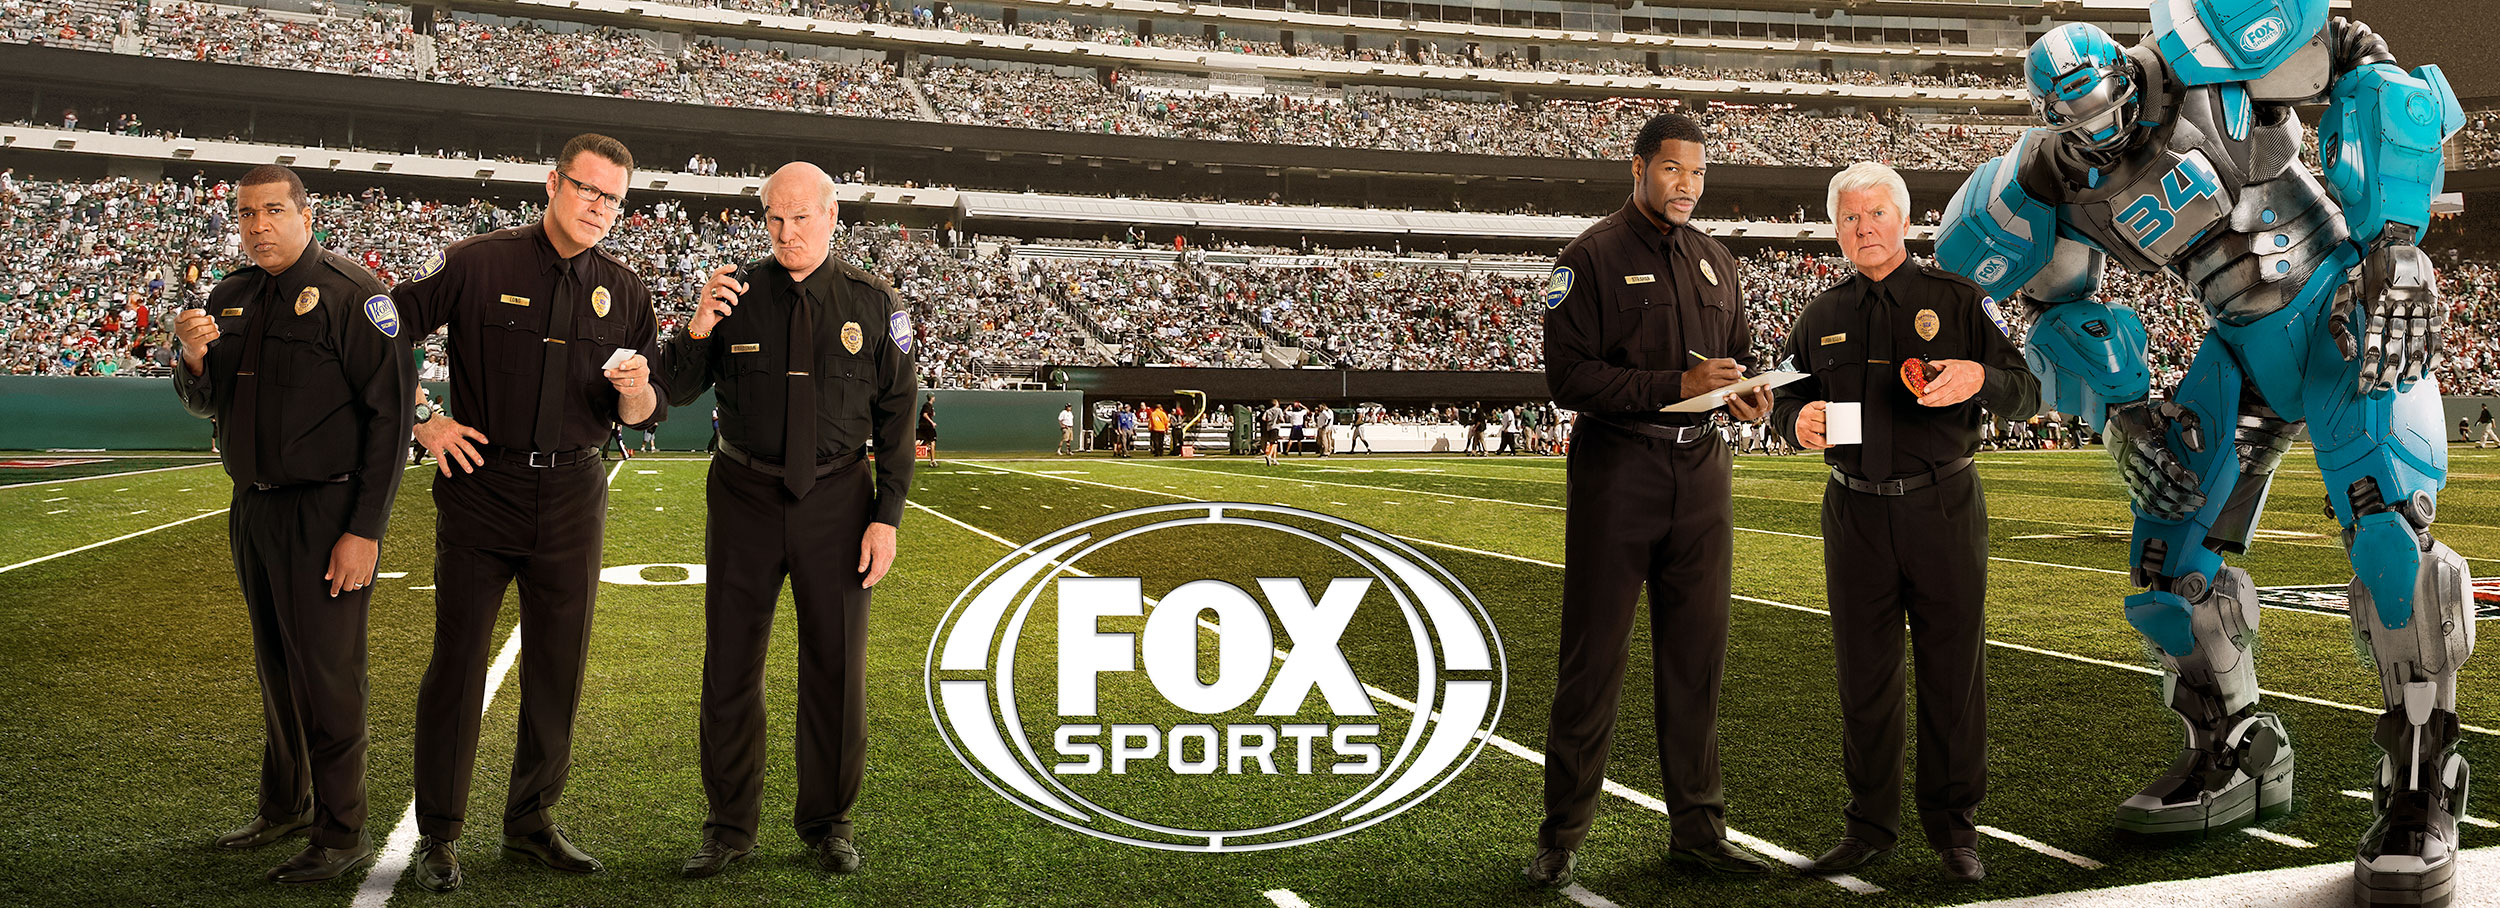 Fox Sports | NFL Lineup Wall